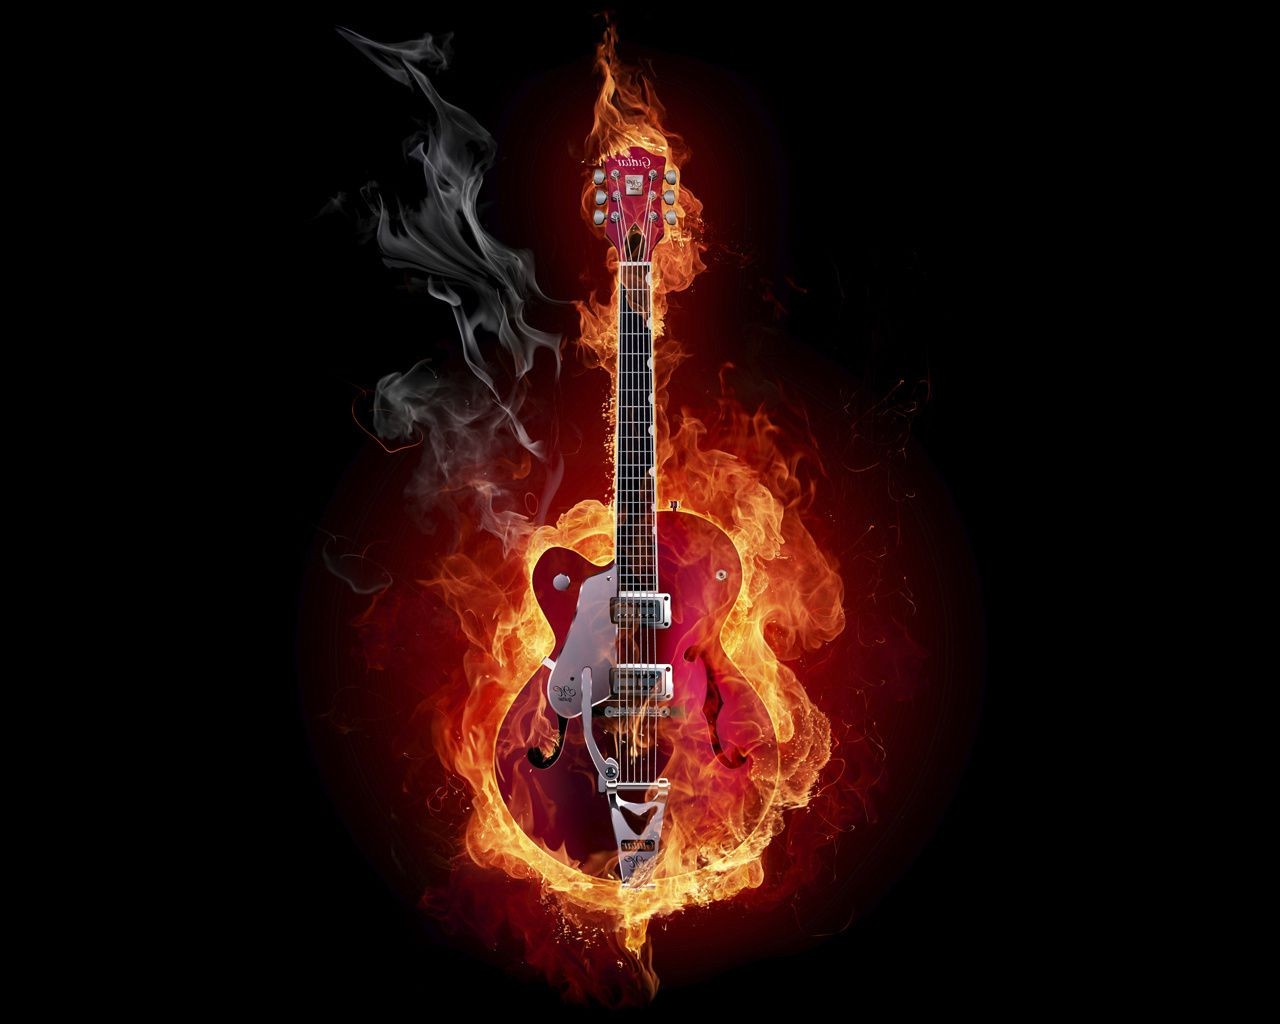 fire hot flame heat flammable blaze burn danger music burnt smoke typescript sound